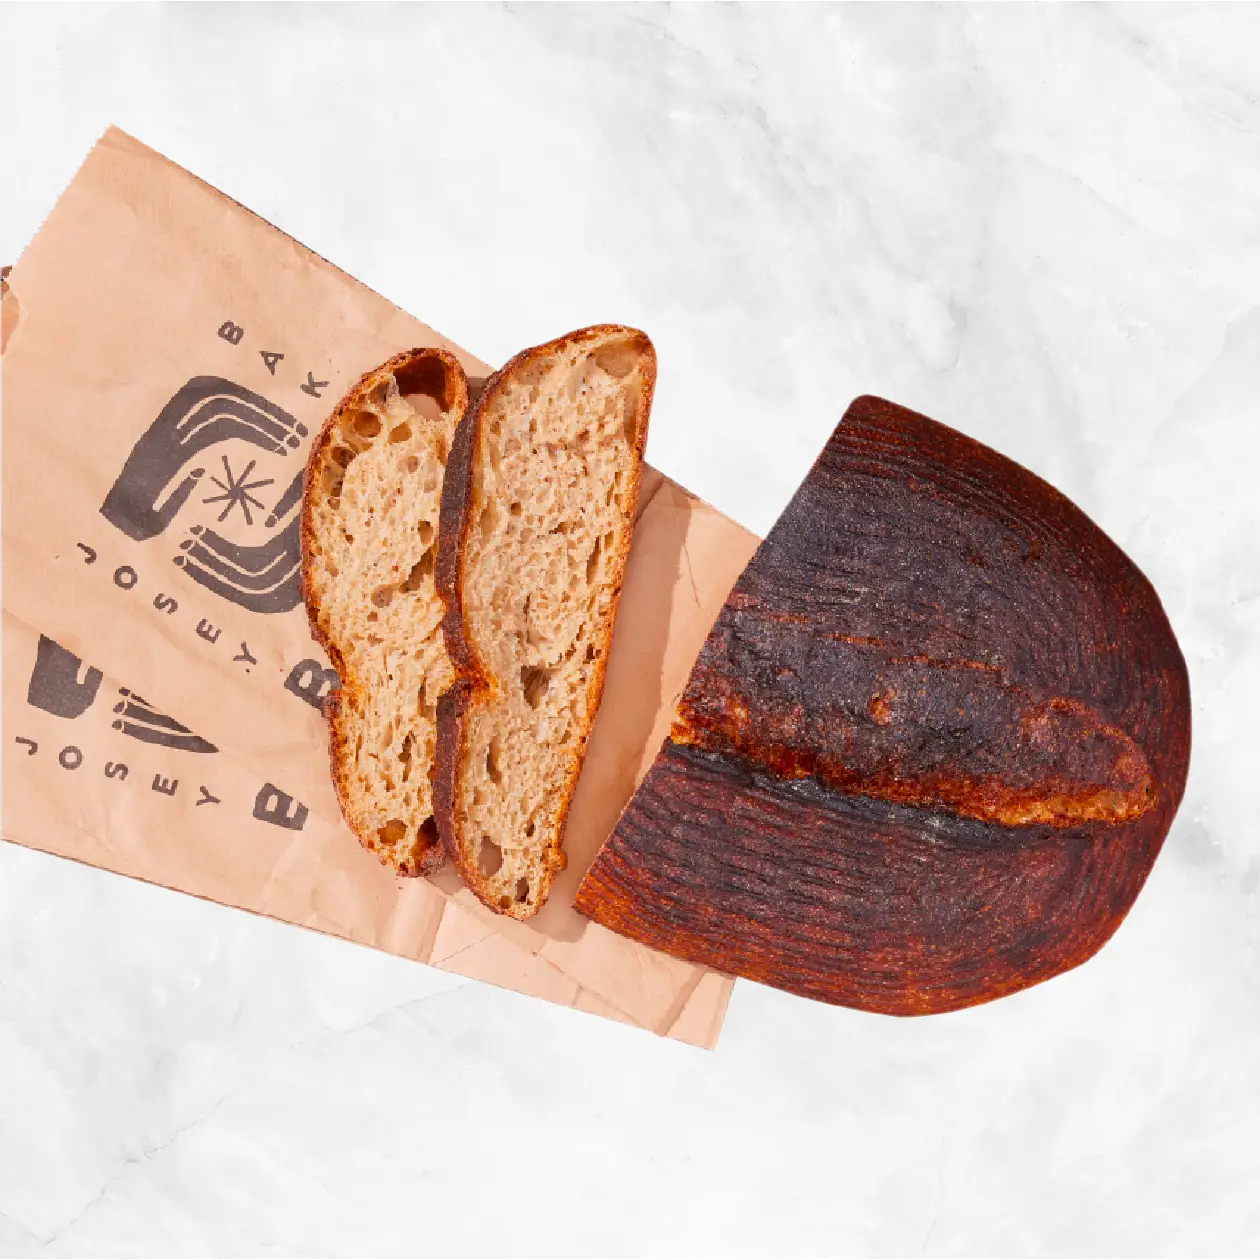 Country Bread - Josey Baker Bread